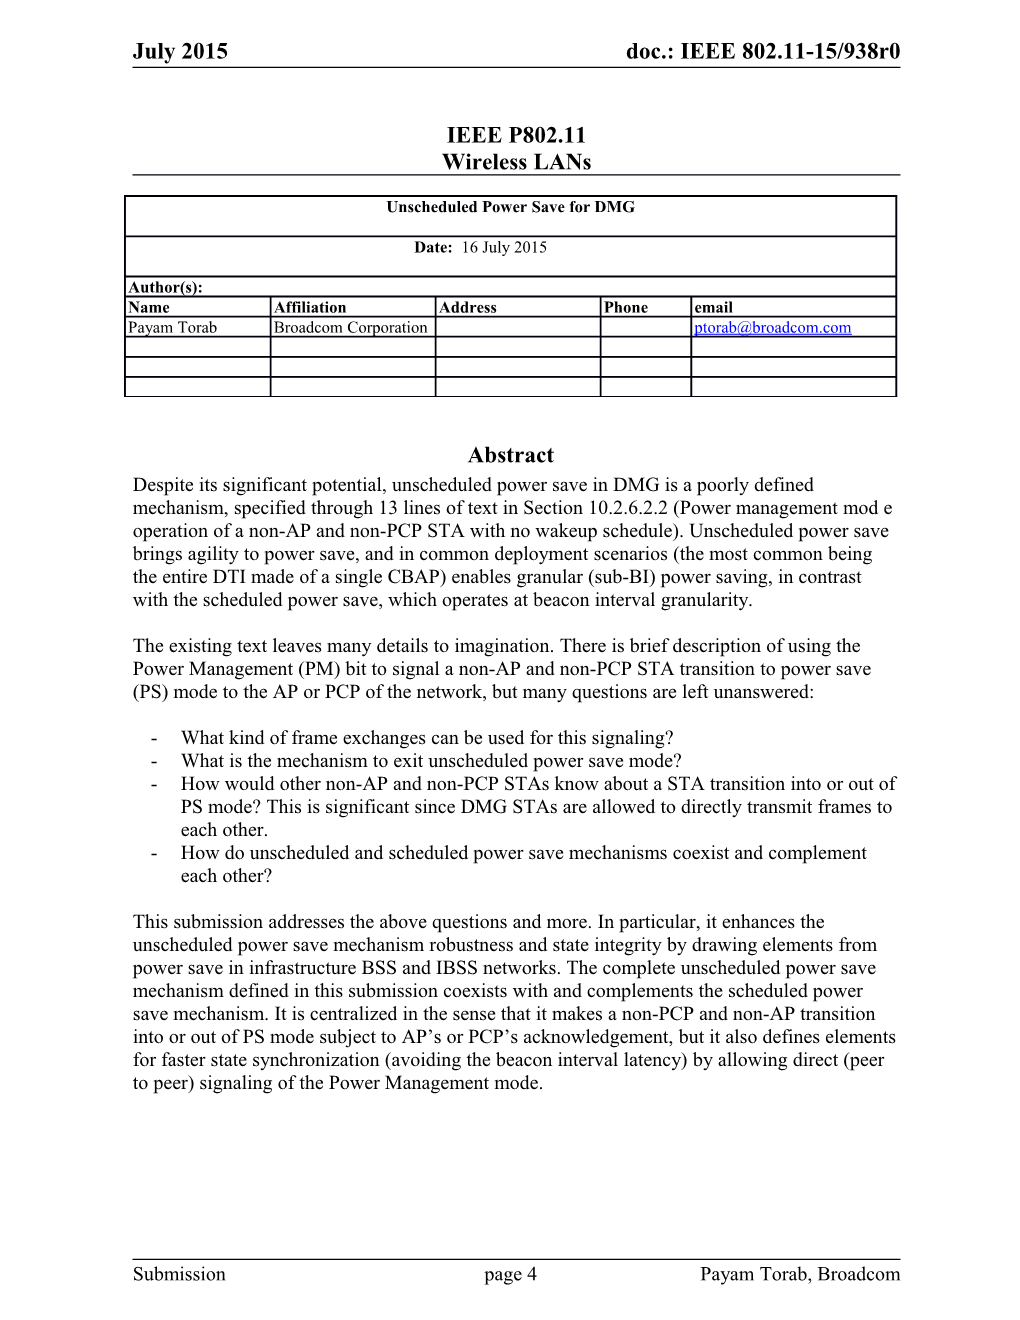 IEEE P802.11 Wireless Lans s21